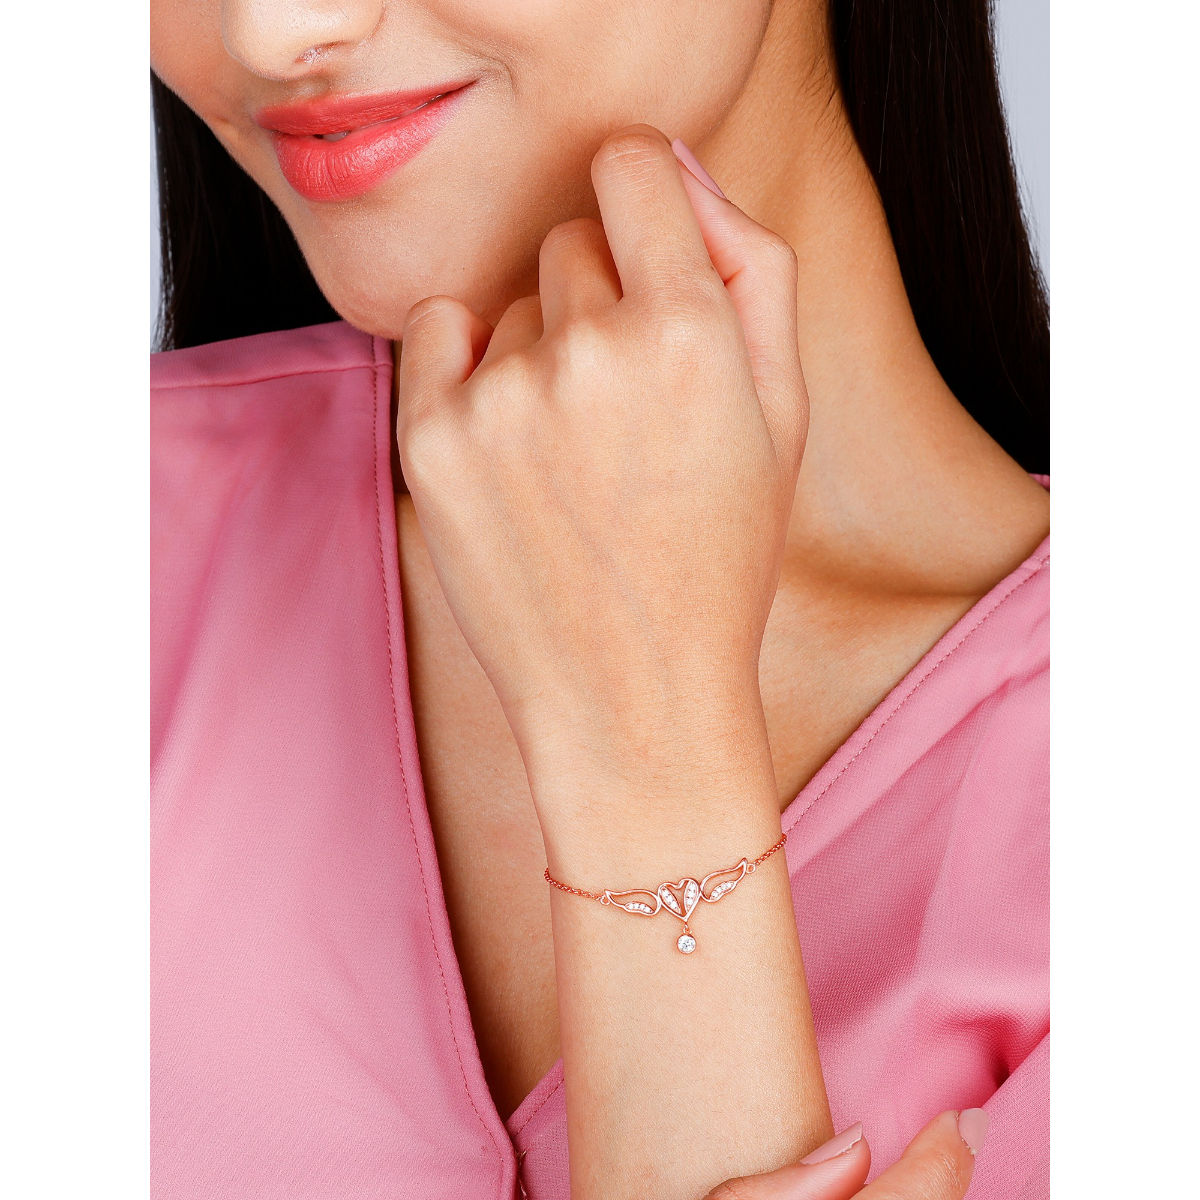 Swarovski One Adjustable Bracelet, Heart, Pink, Rose Gold-Tone Plated